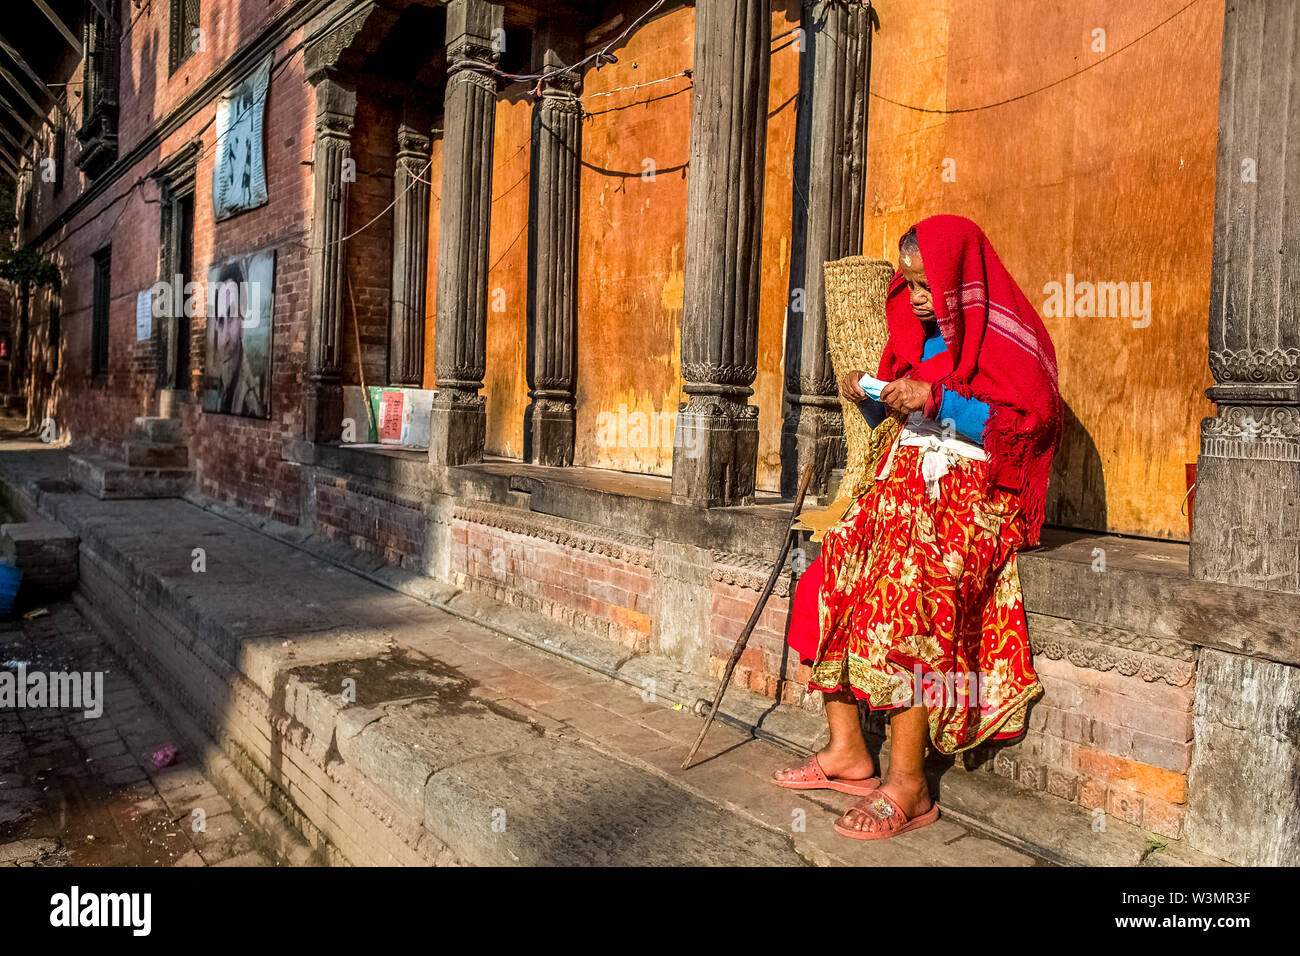 Leben nach dem Erdbeben. Ältere Frau an einem alten Menschen zu Hause, in Panchadeval, Pashupatinath, Kathmandu. Ein Erdbeben der Stärke 7.8 struck Nepal bei 11:56 morgens, am 25. April 2015, töteten mindestens 7000 Menschen. Kathmandu, Nepal. Mai 2, 2015. Stockfoto